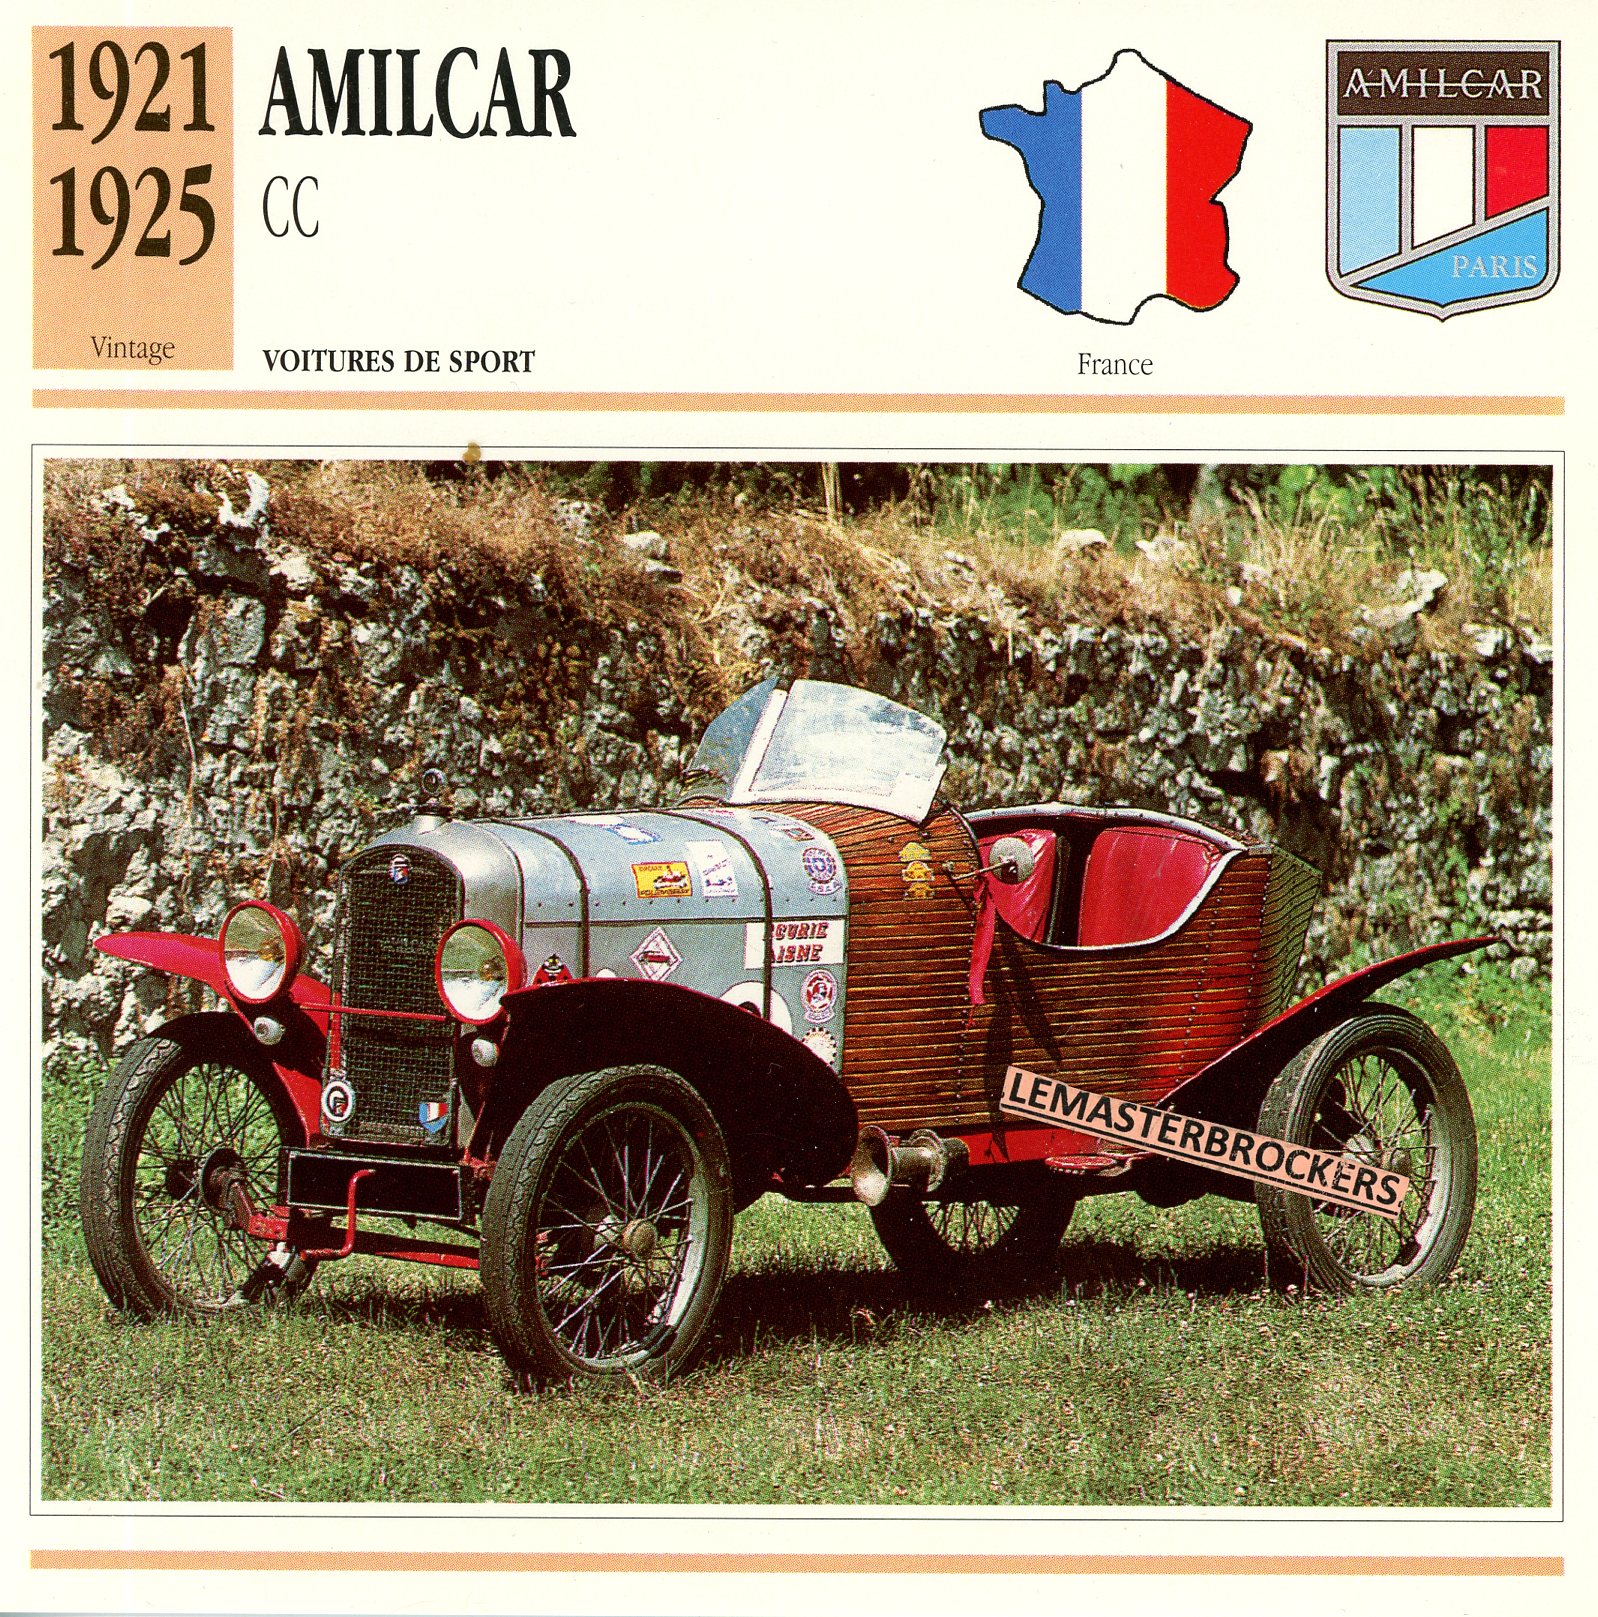 AMILCAR-CC-1921-1925-FICHE-AUTO-LEMASTERBROCKERS-ATLAS-ÉDITION